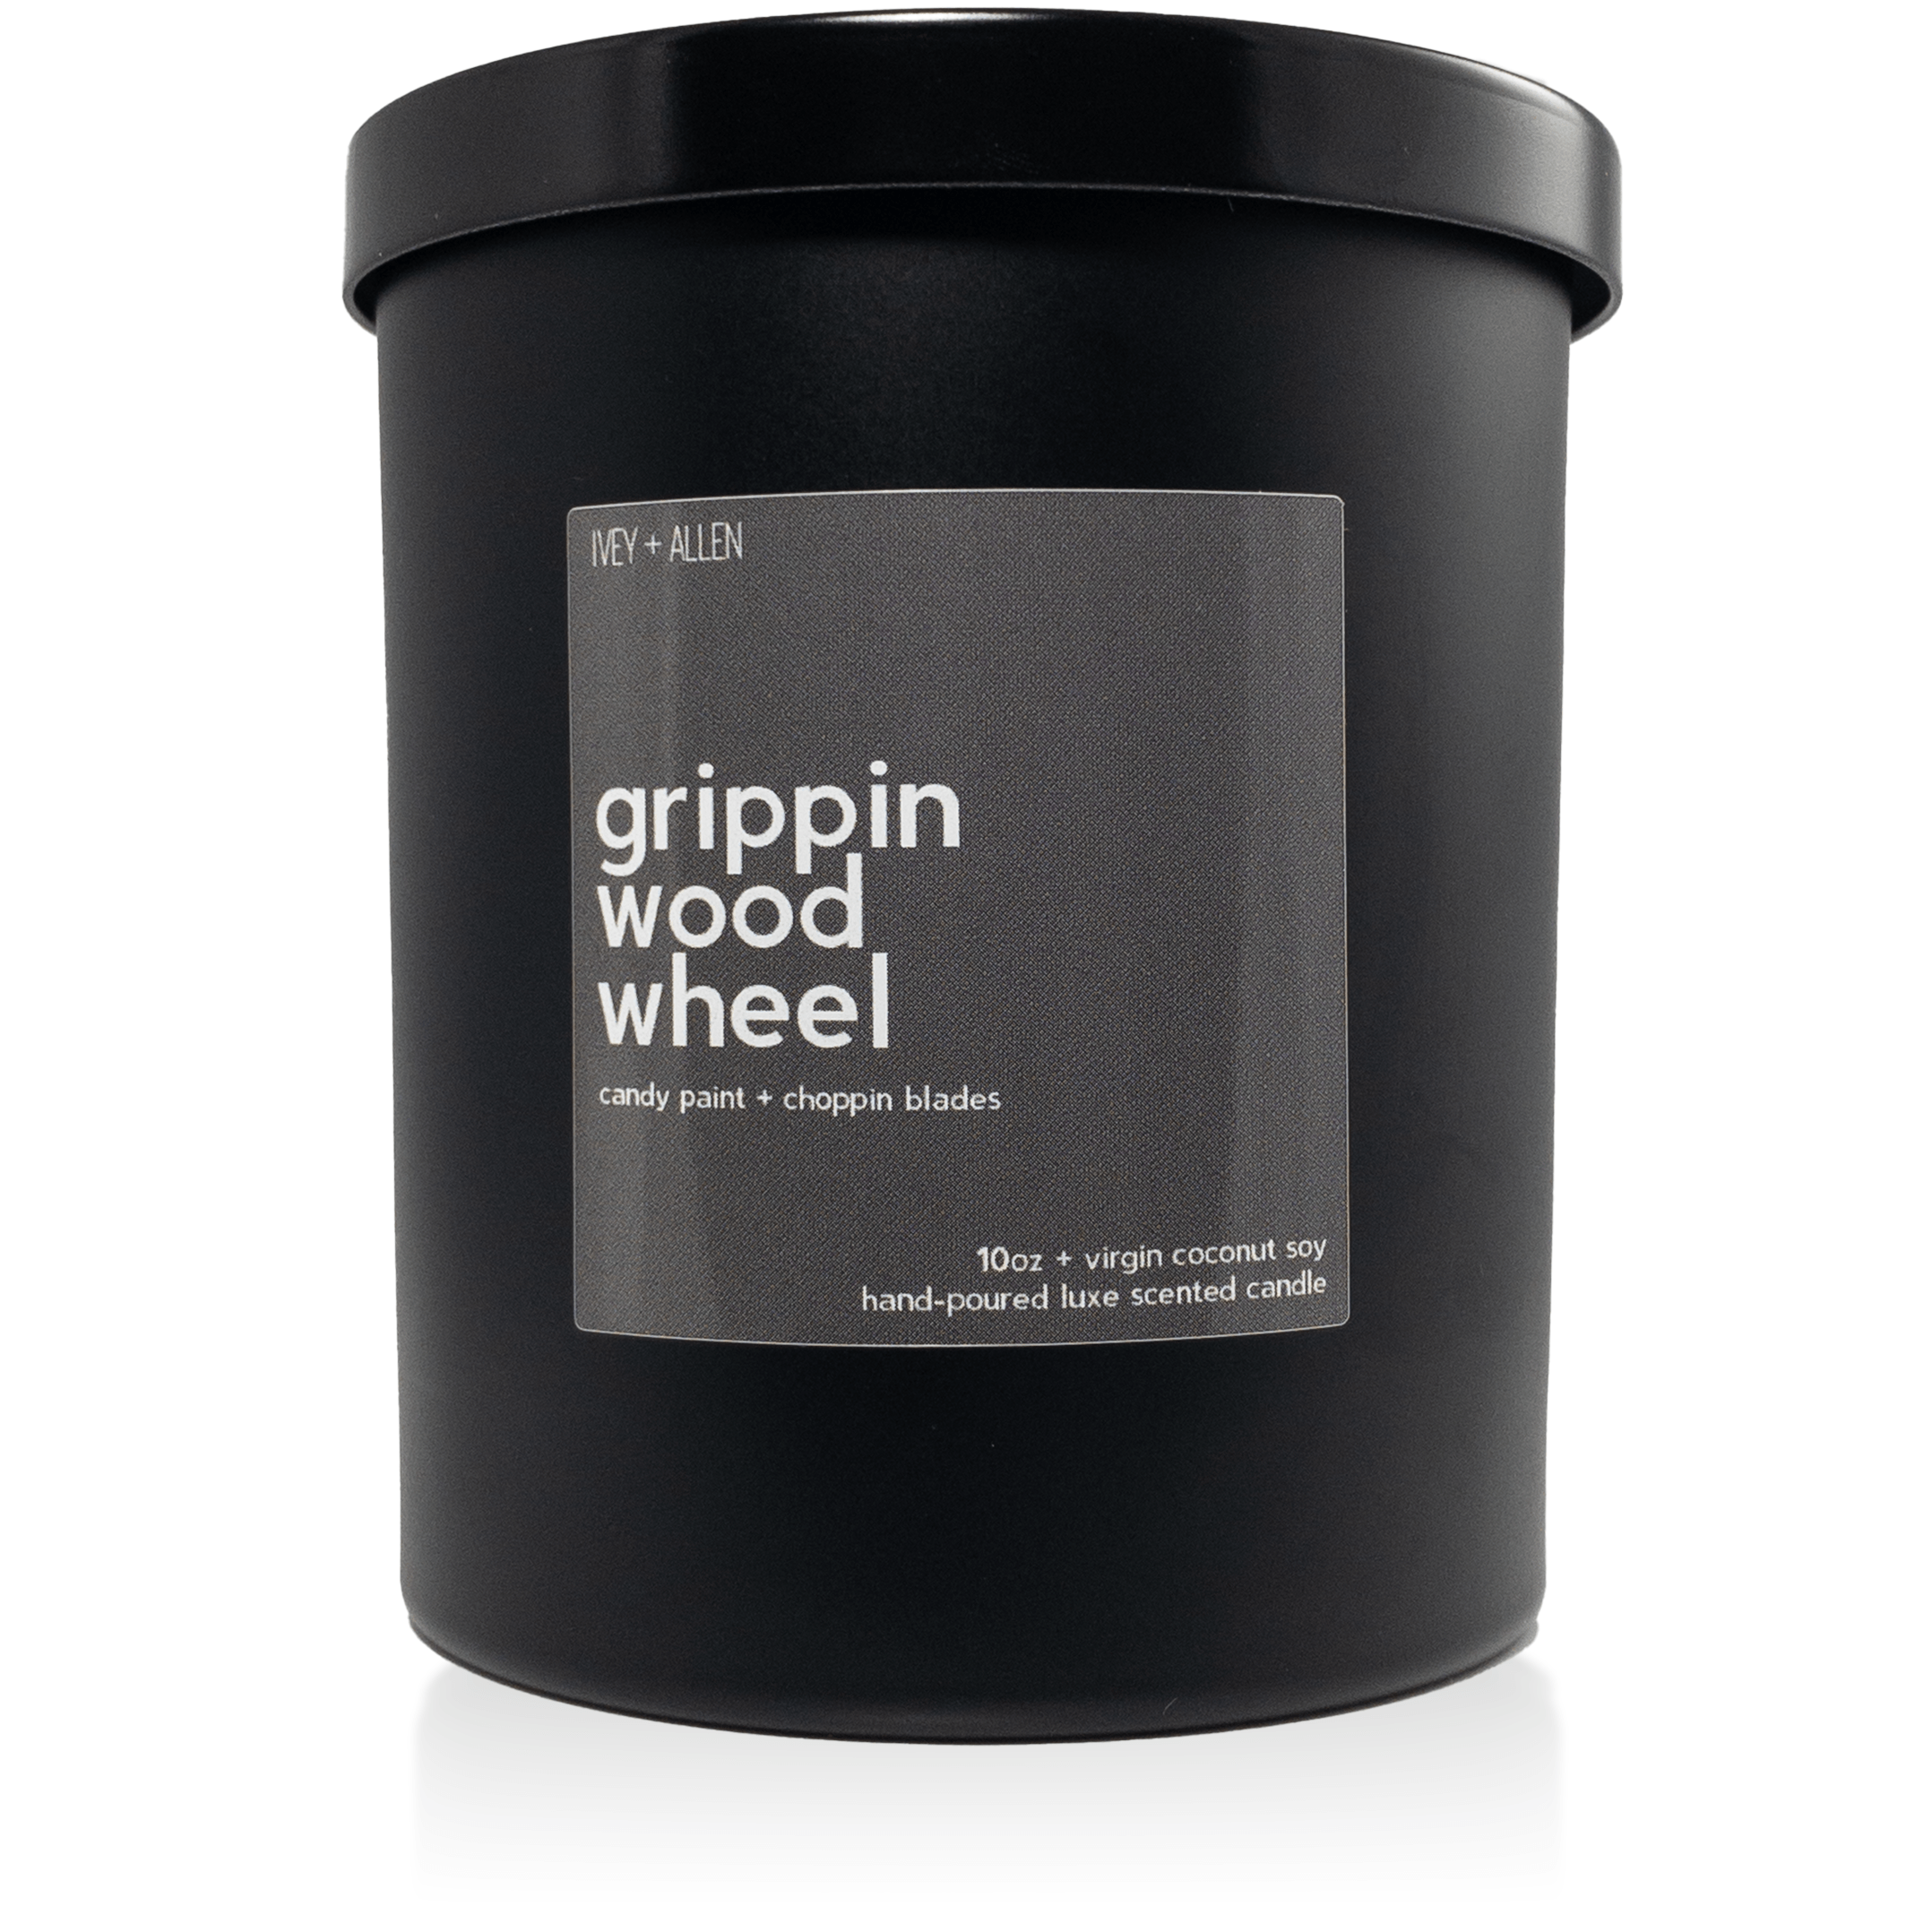 grippin wood wheel - IVEY + ALLEN